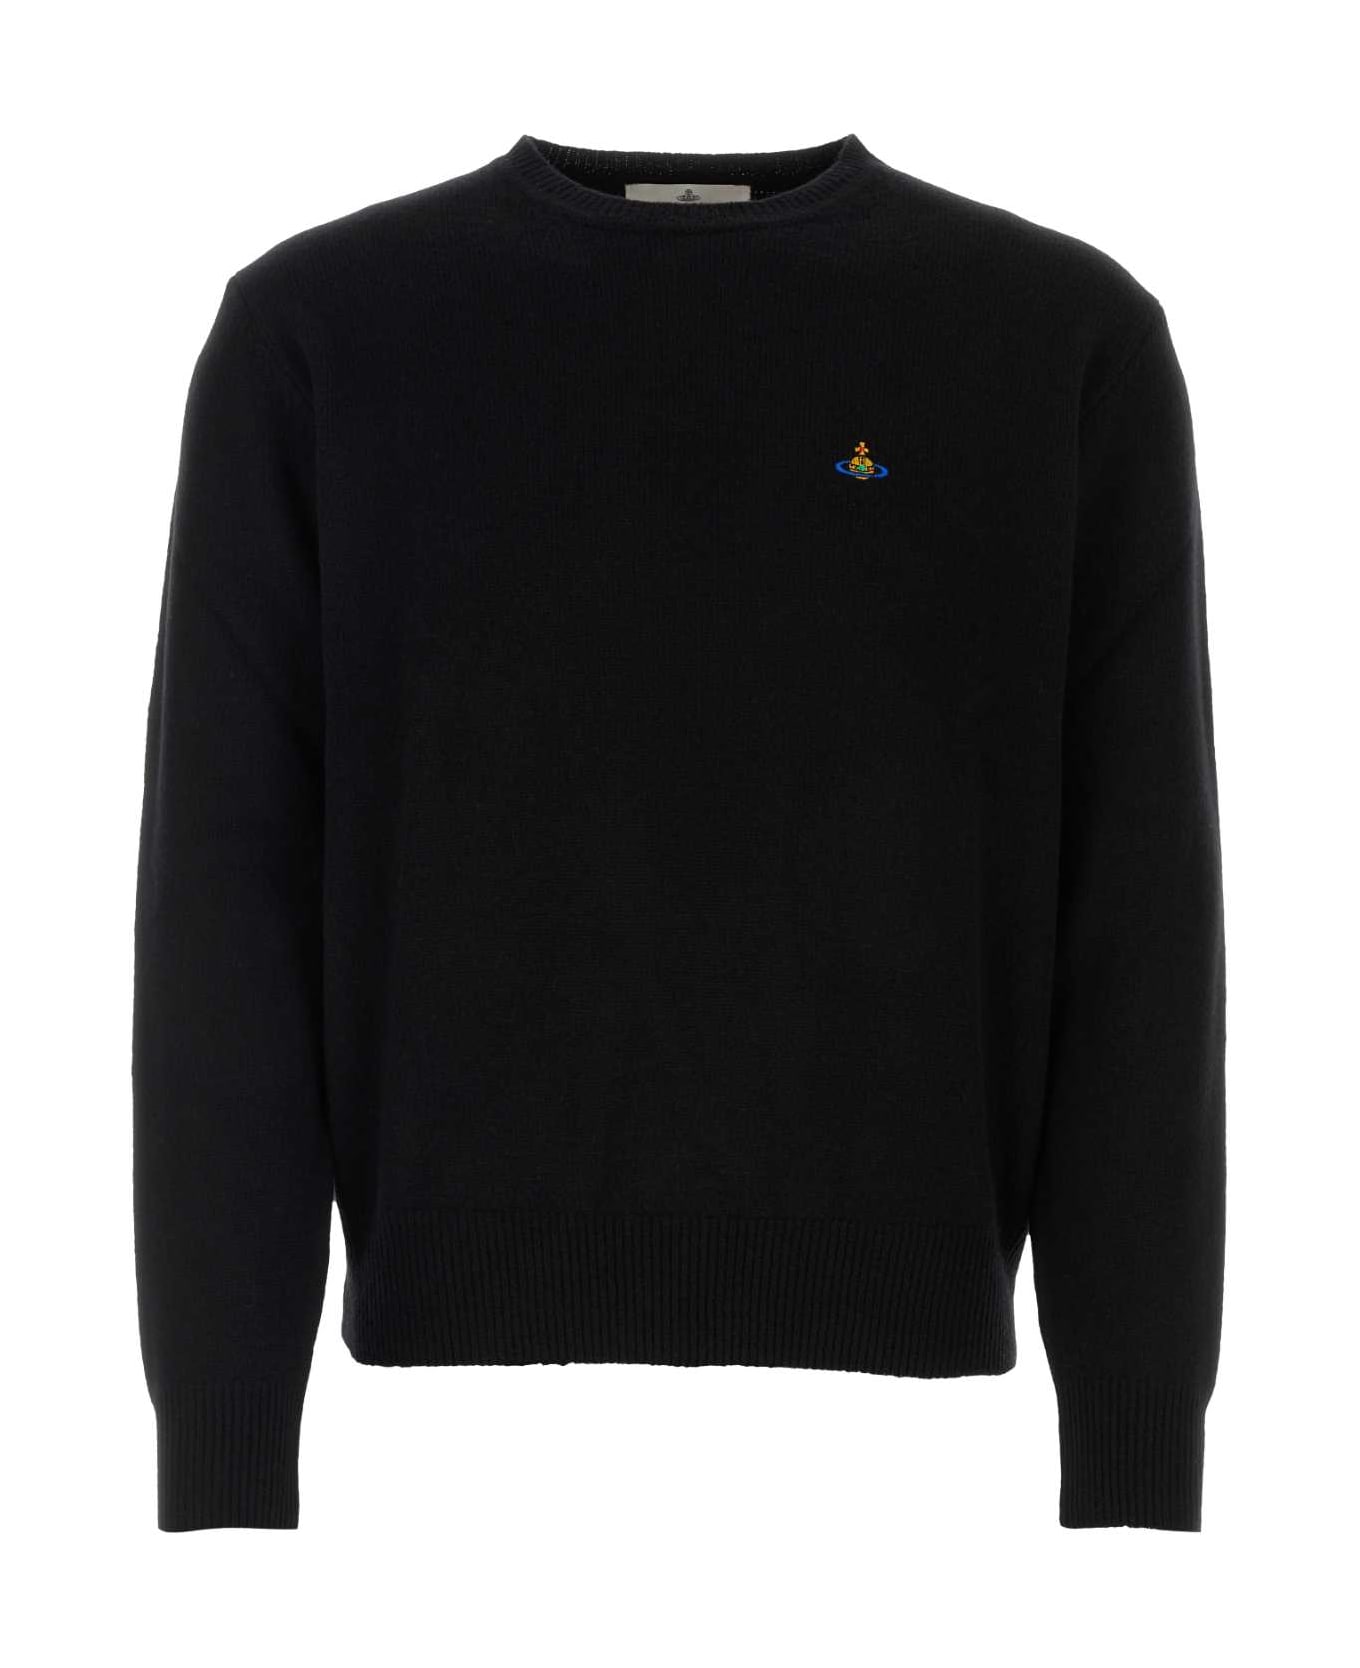 Vivienne Westwood Black Wool Blend Alex Sweater - Black